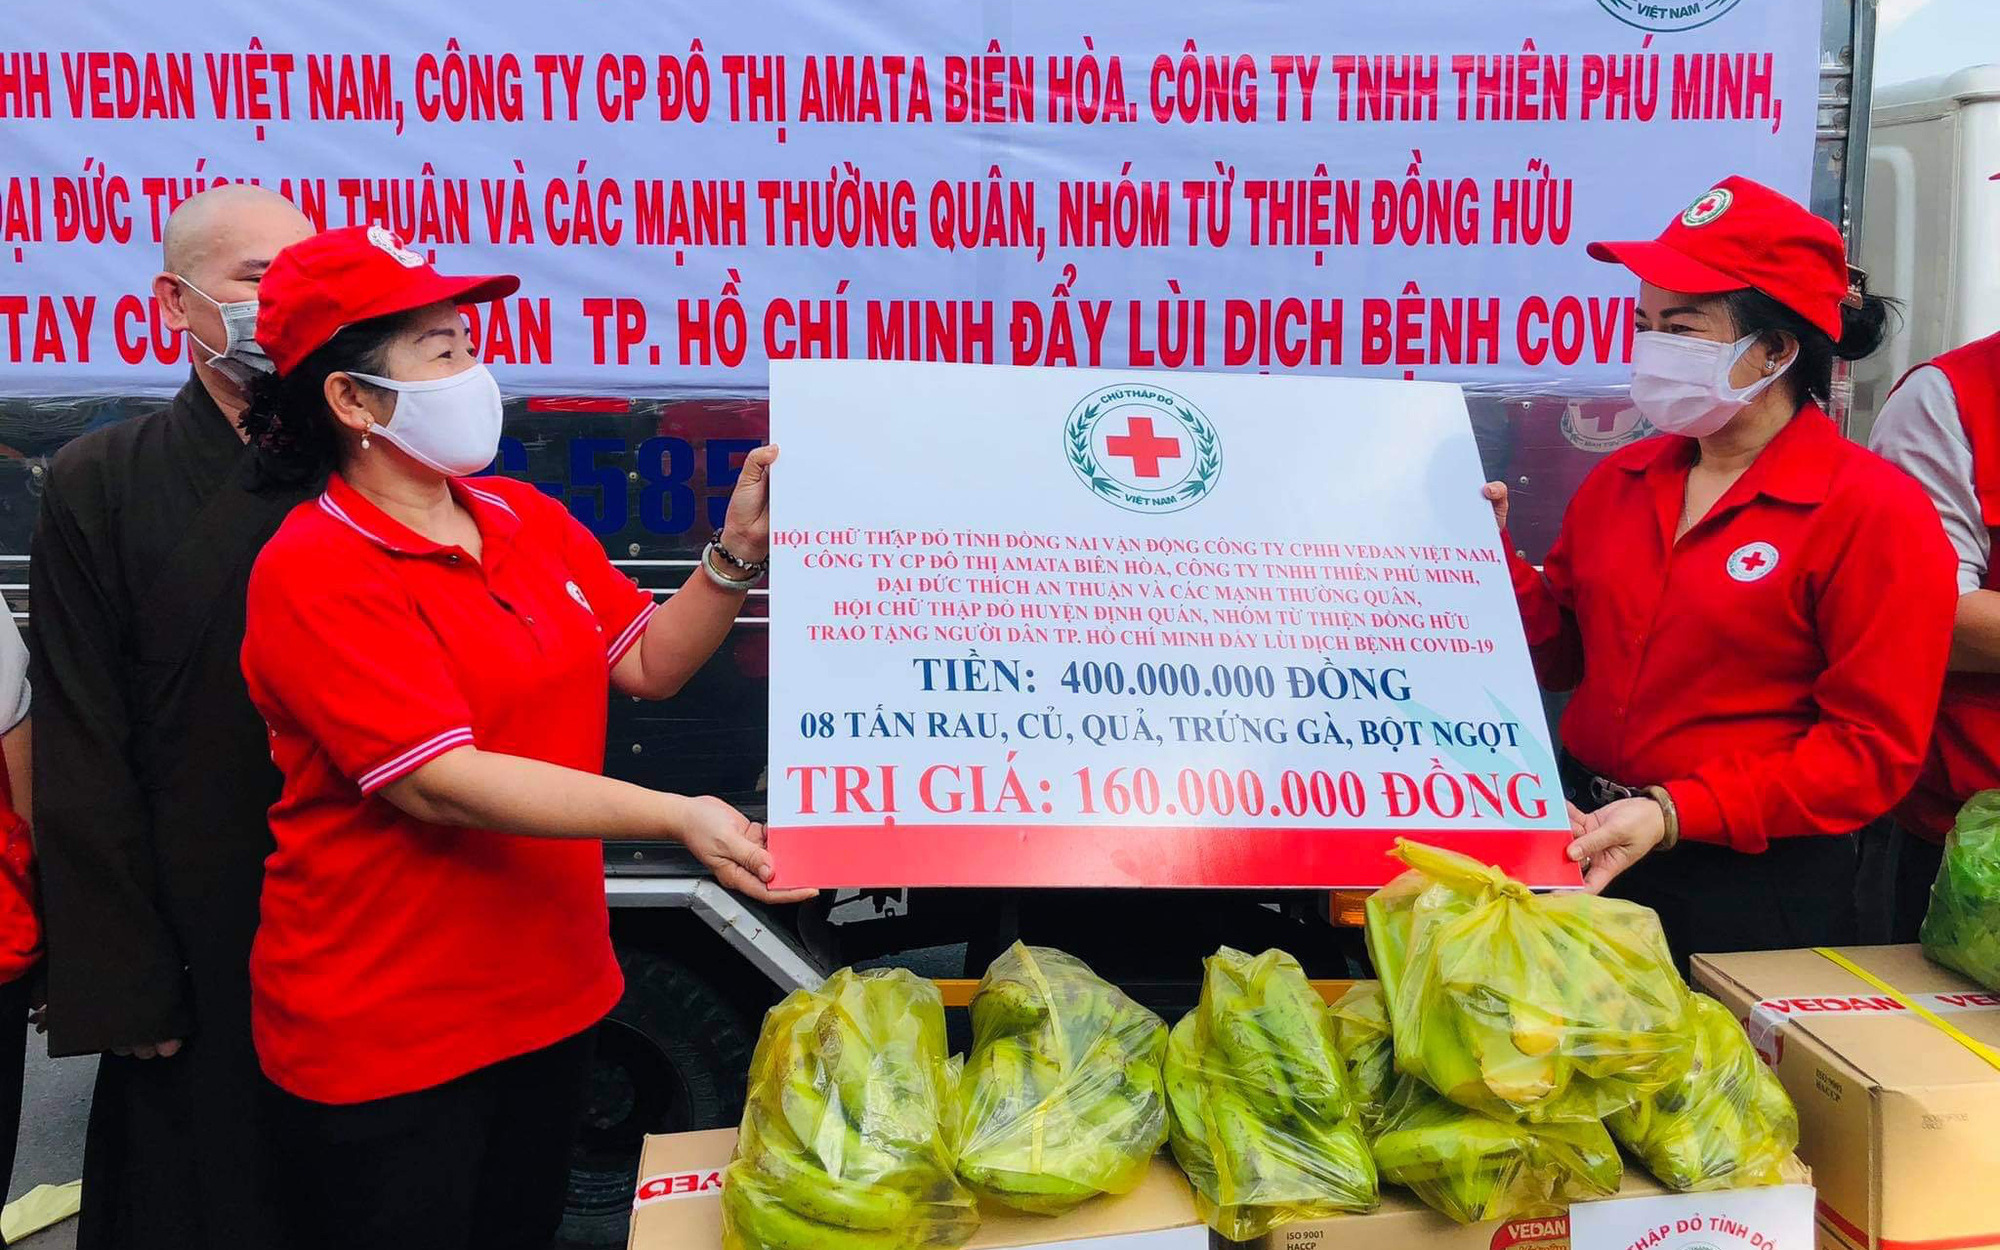 Đồng Nai: Hội chữ thập đỏ và nông dân “chia lửa” với TP.HCM 8 tấn nông sản sạch